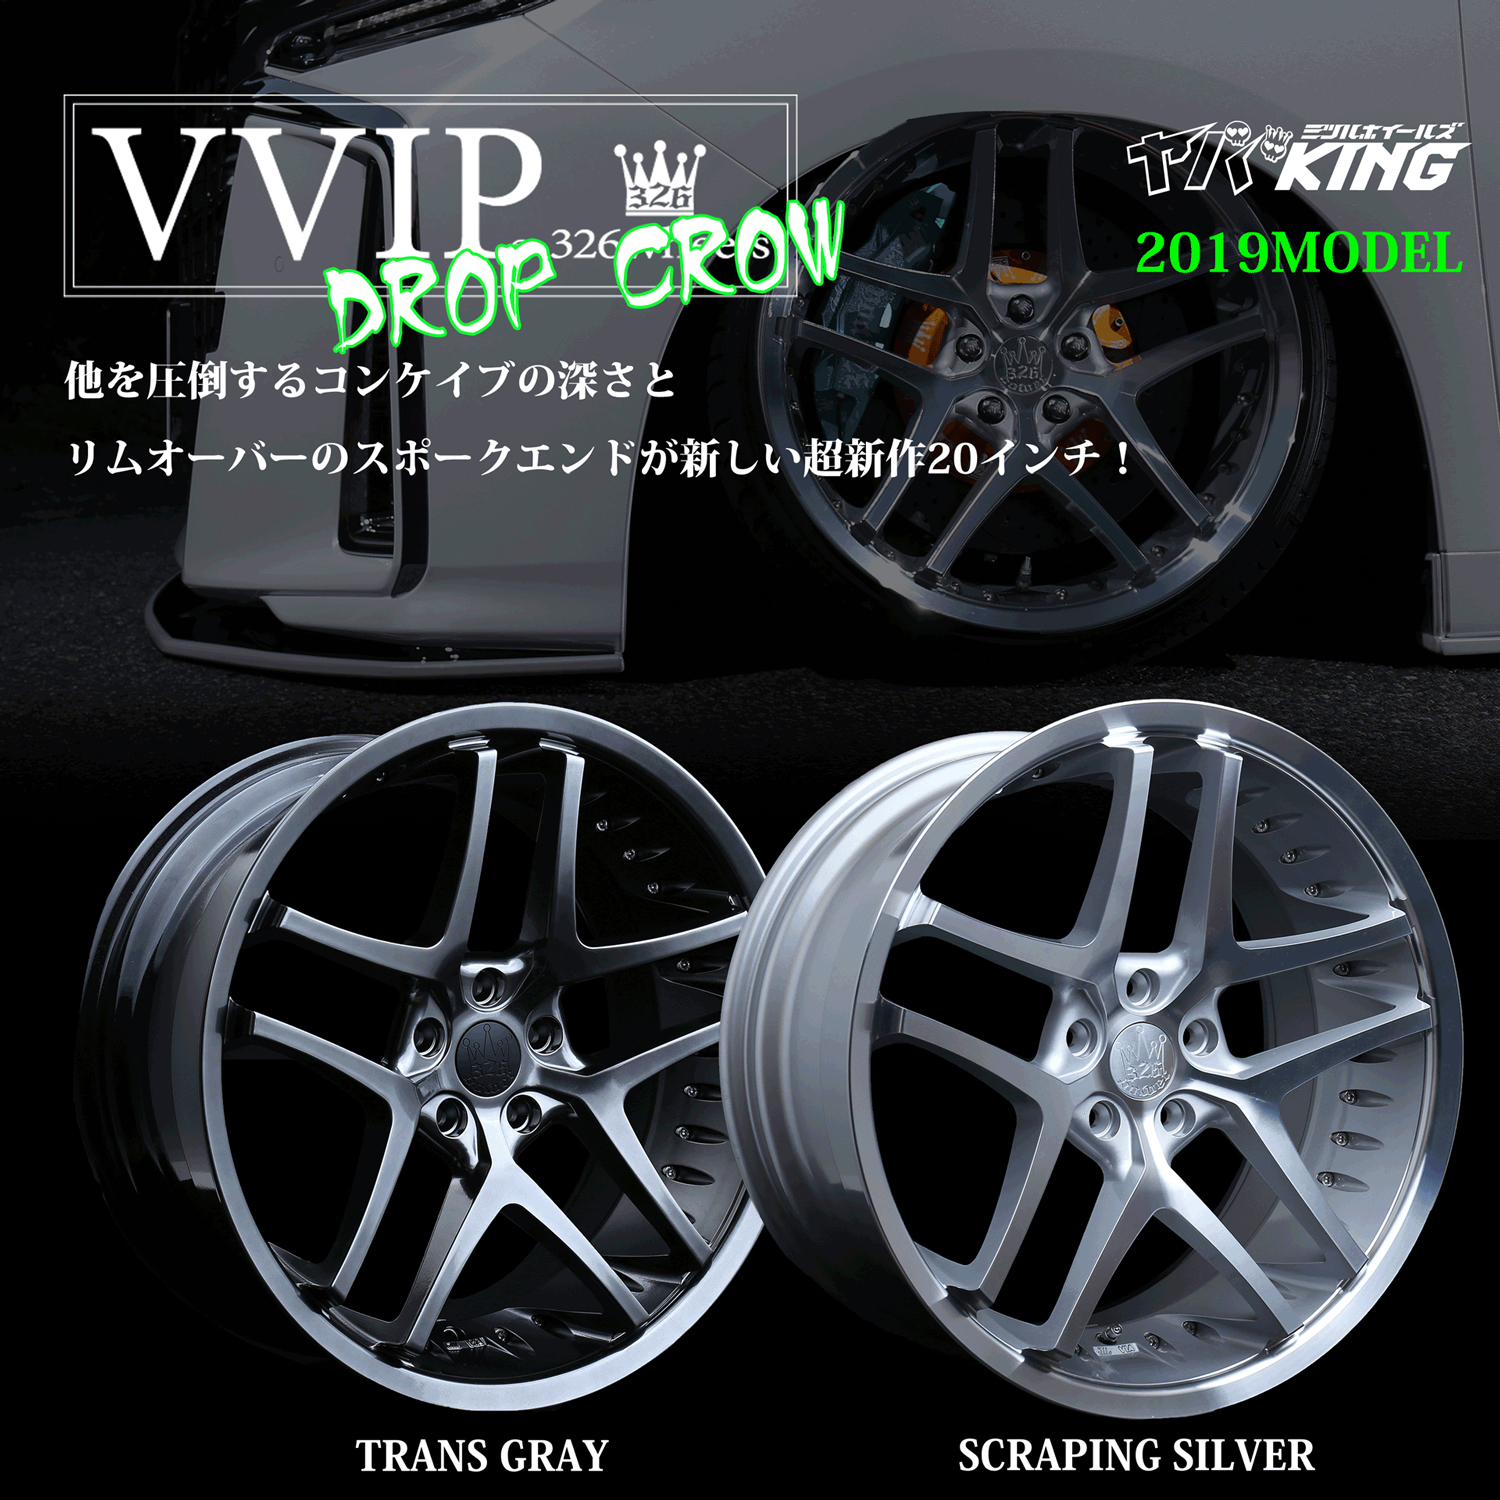 326 Power - Yaba King - VVIP Drop Crow